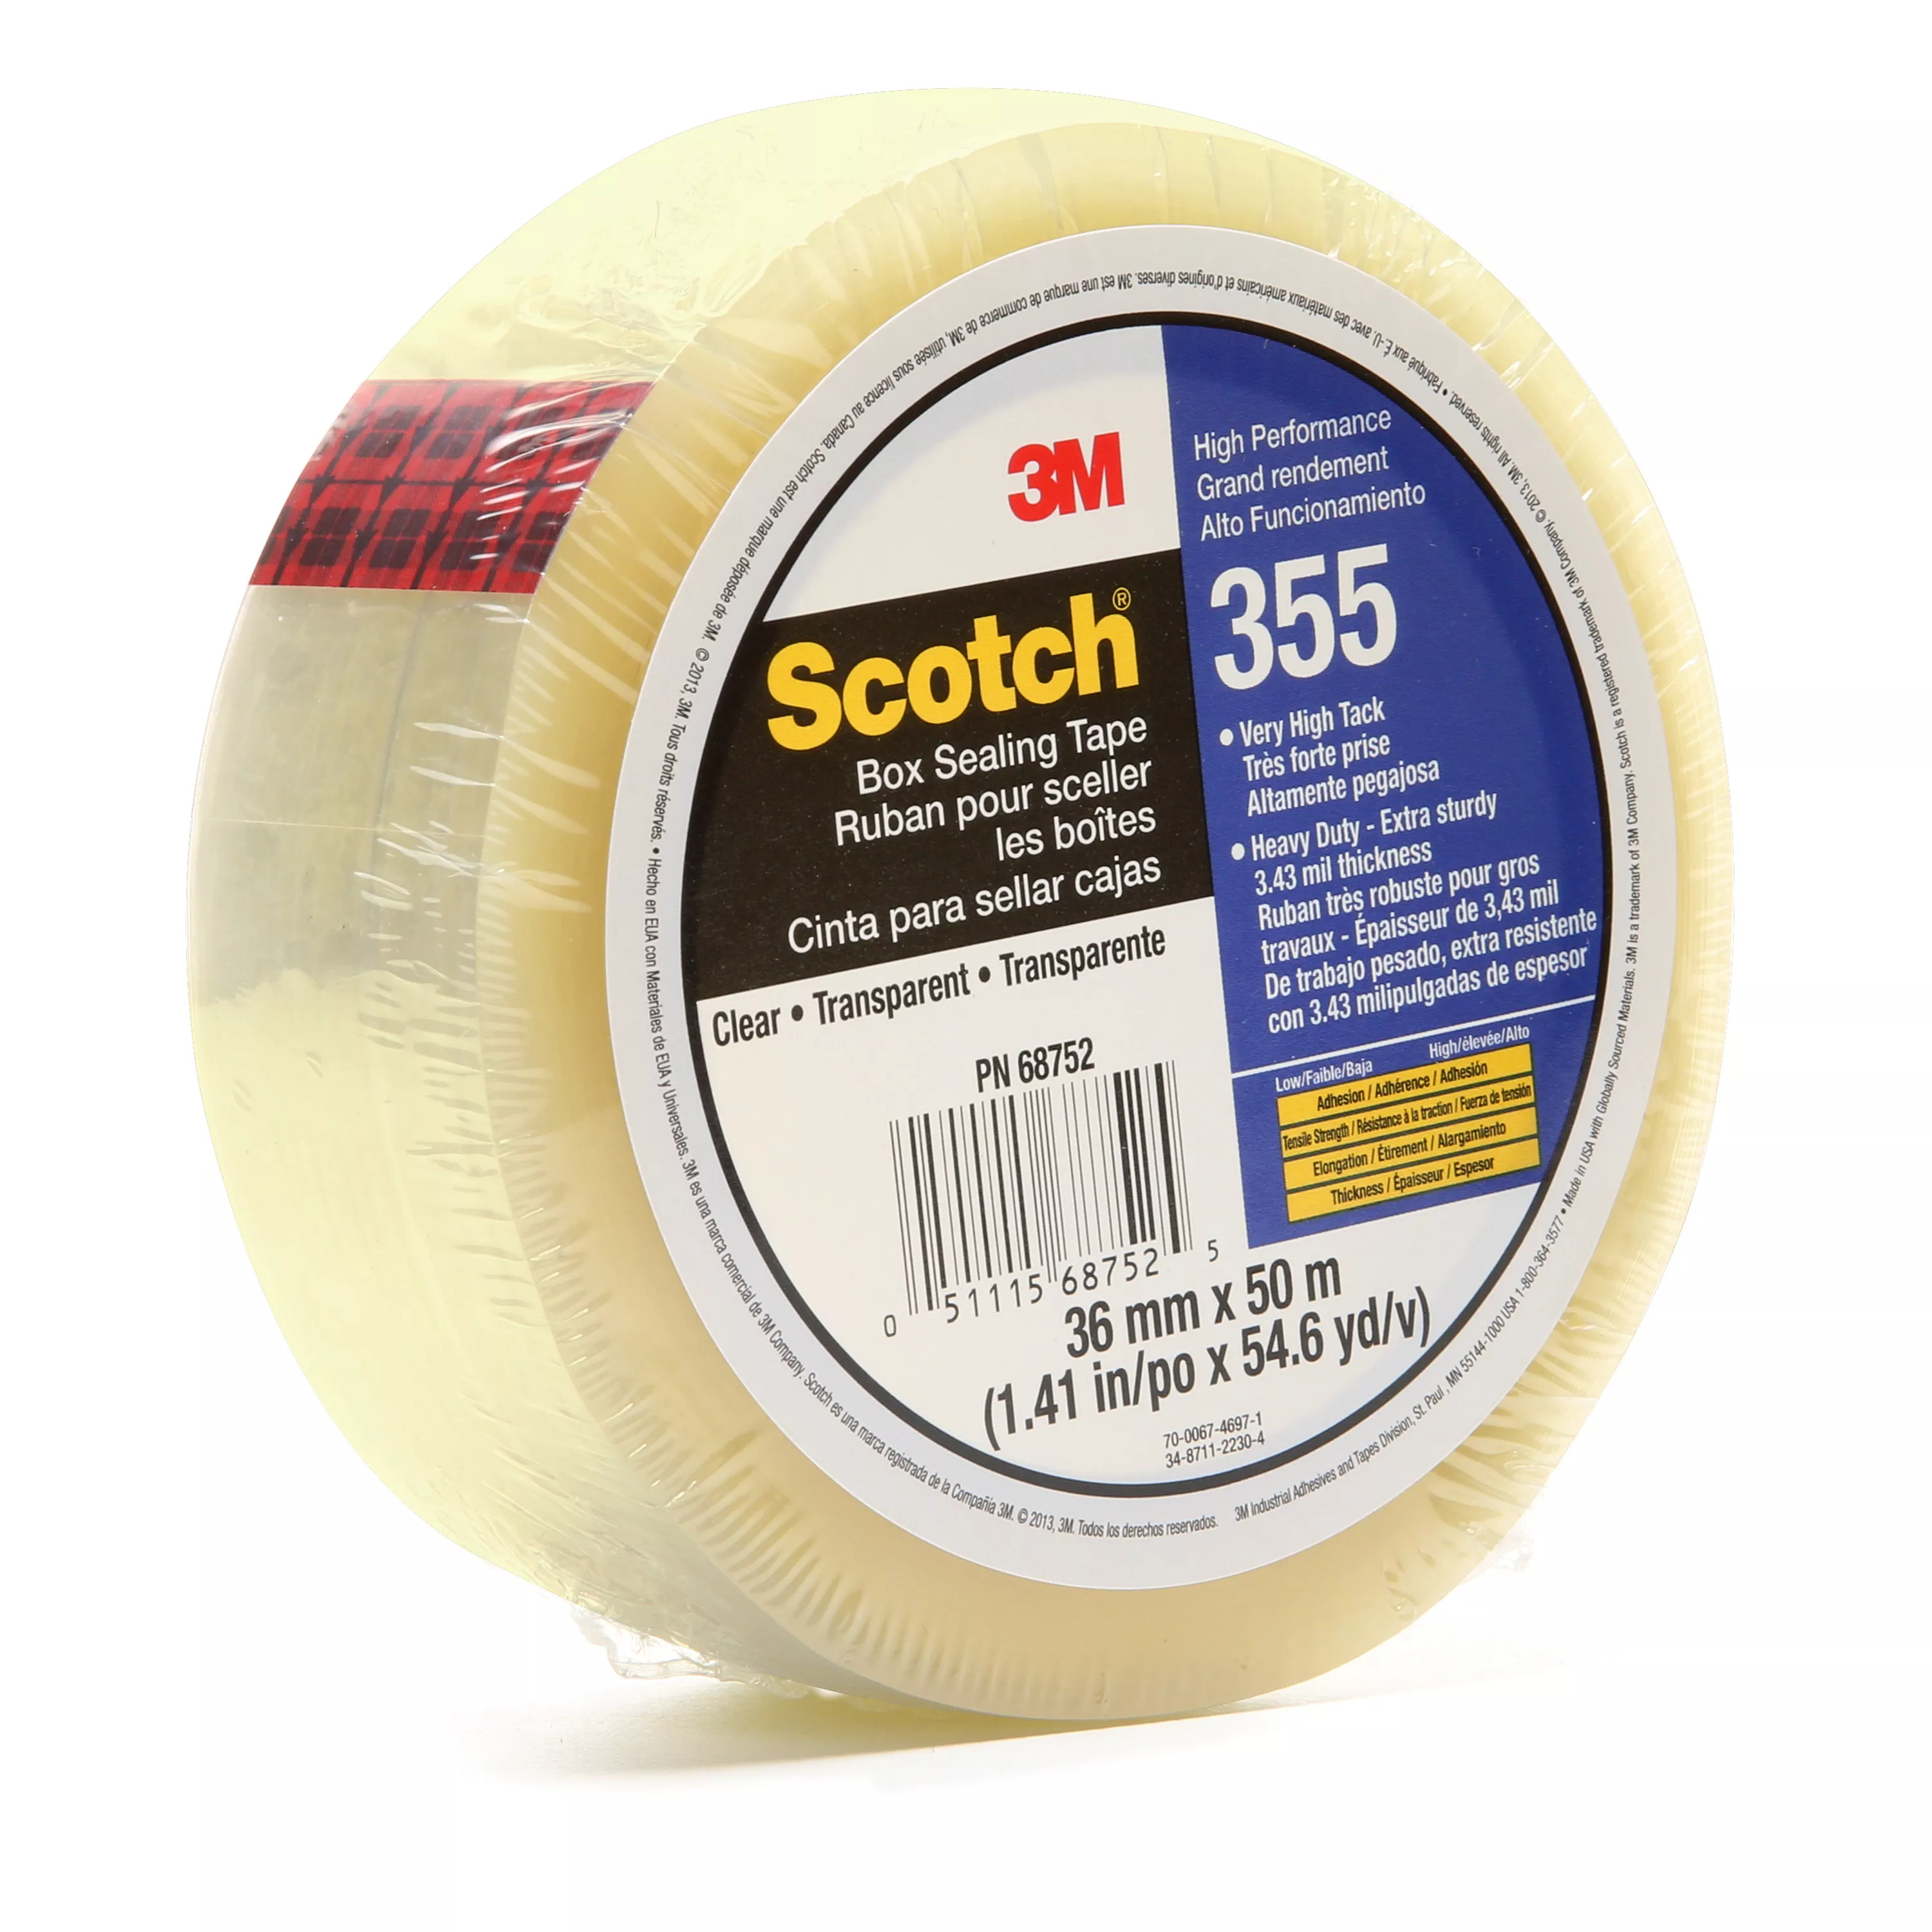 SKU 7010335779 | Scotch® Box Sealing Tape 355